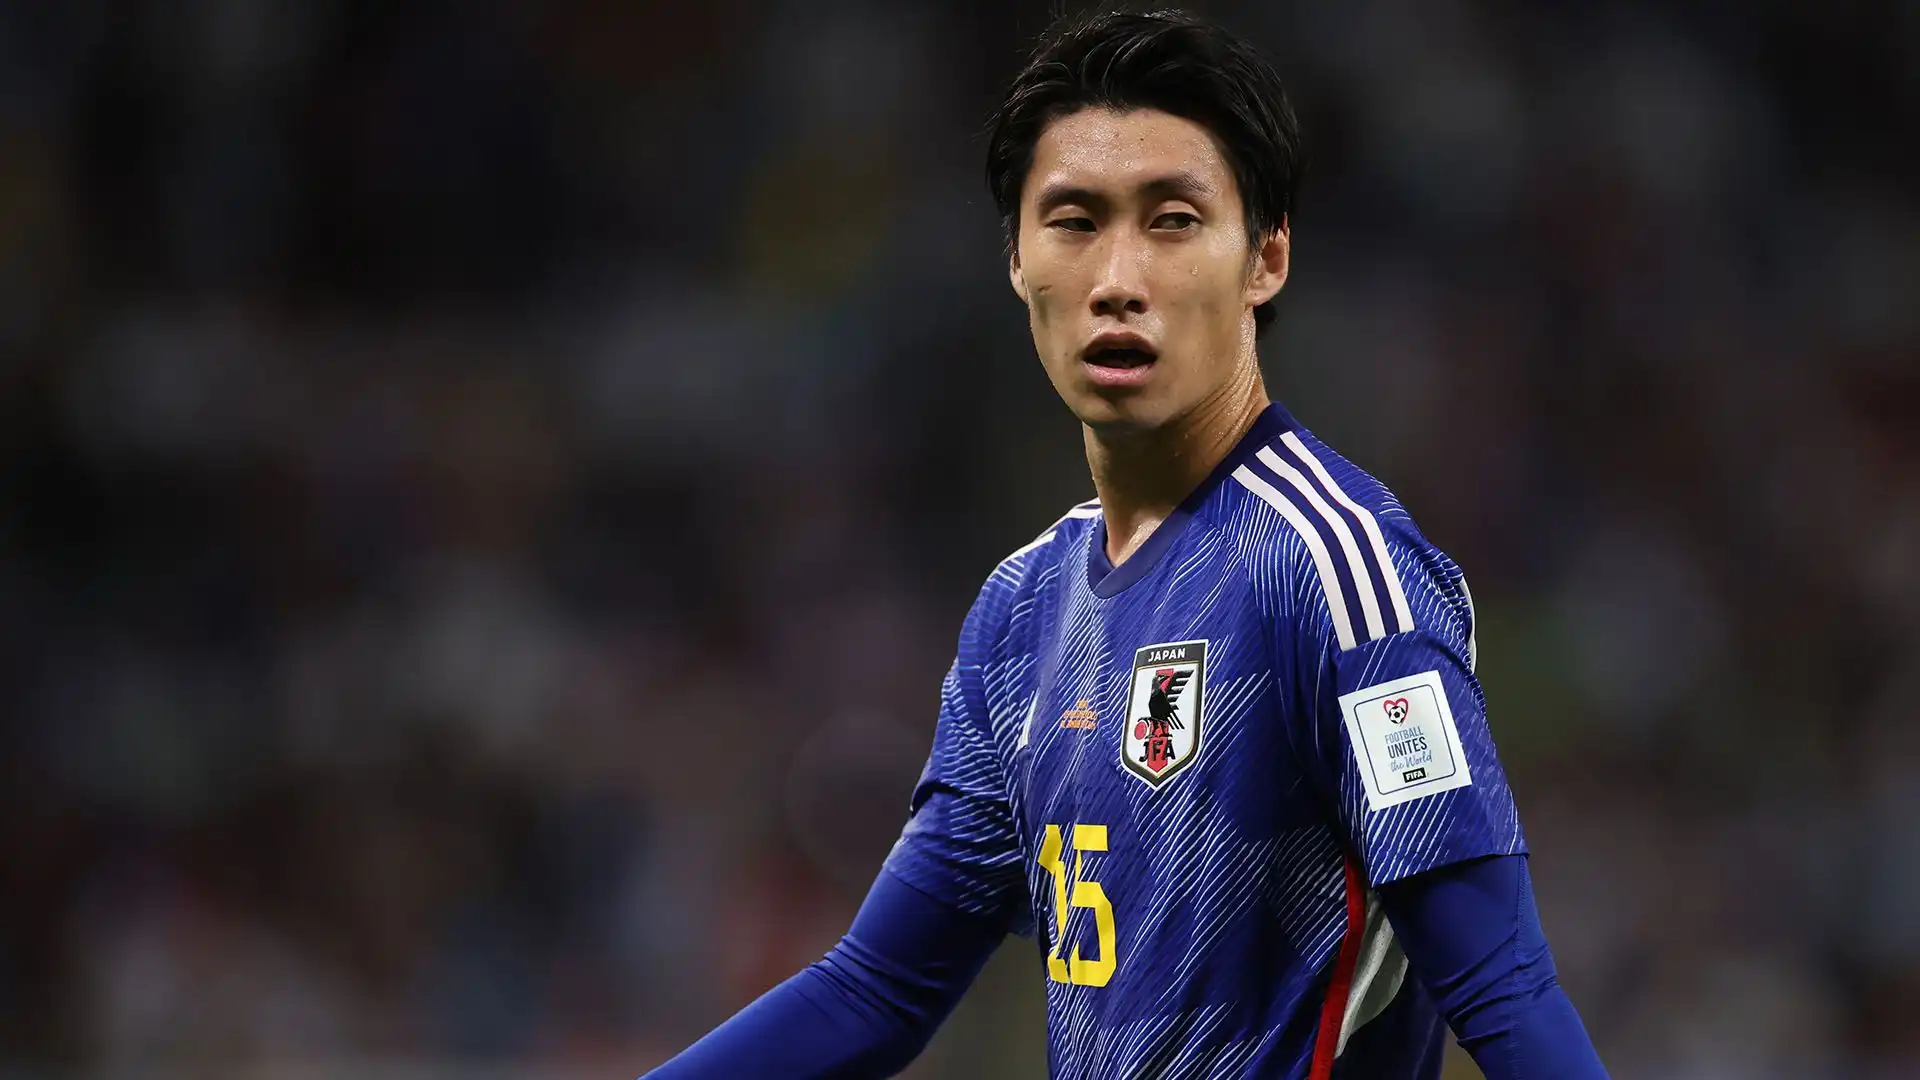 Un trasferimento già storico: è il primo giapponese nella storia del club